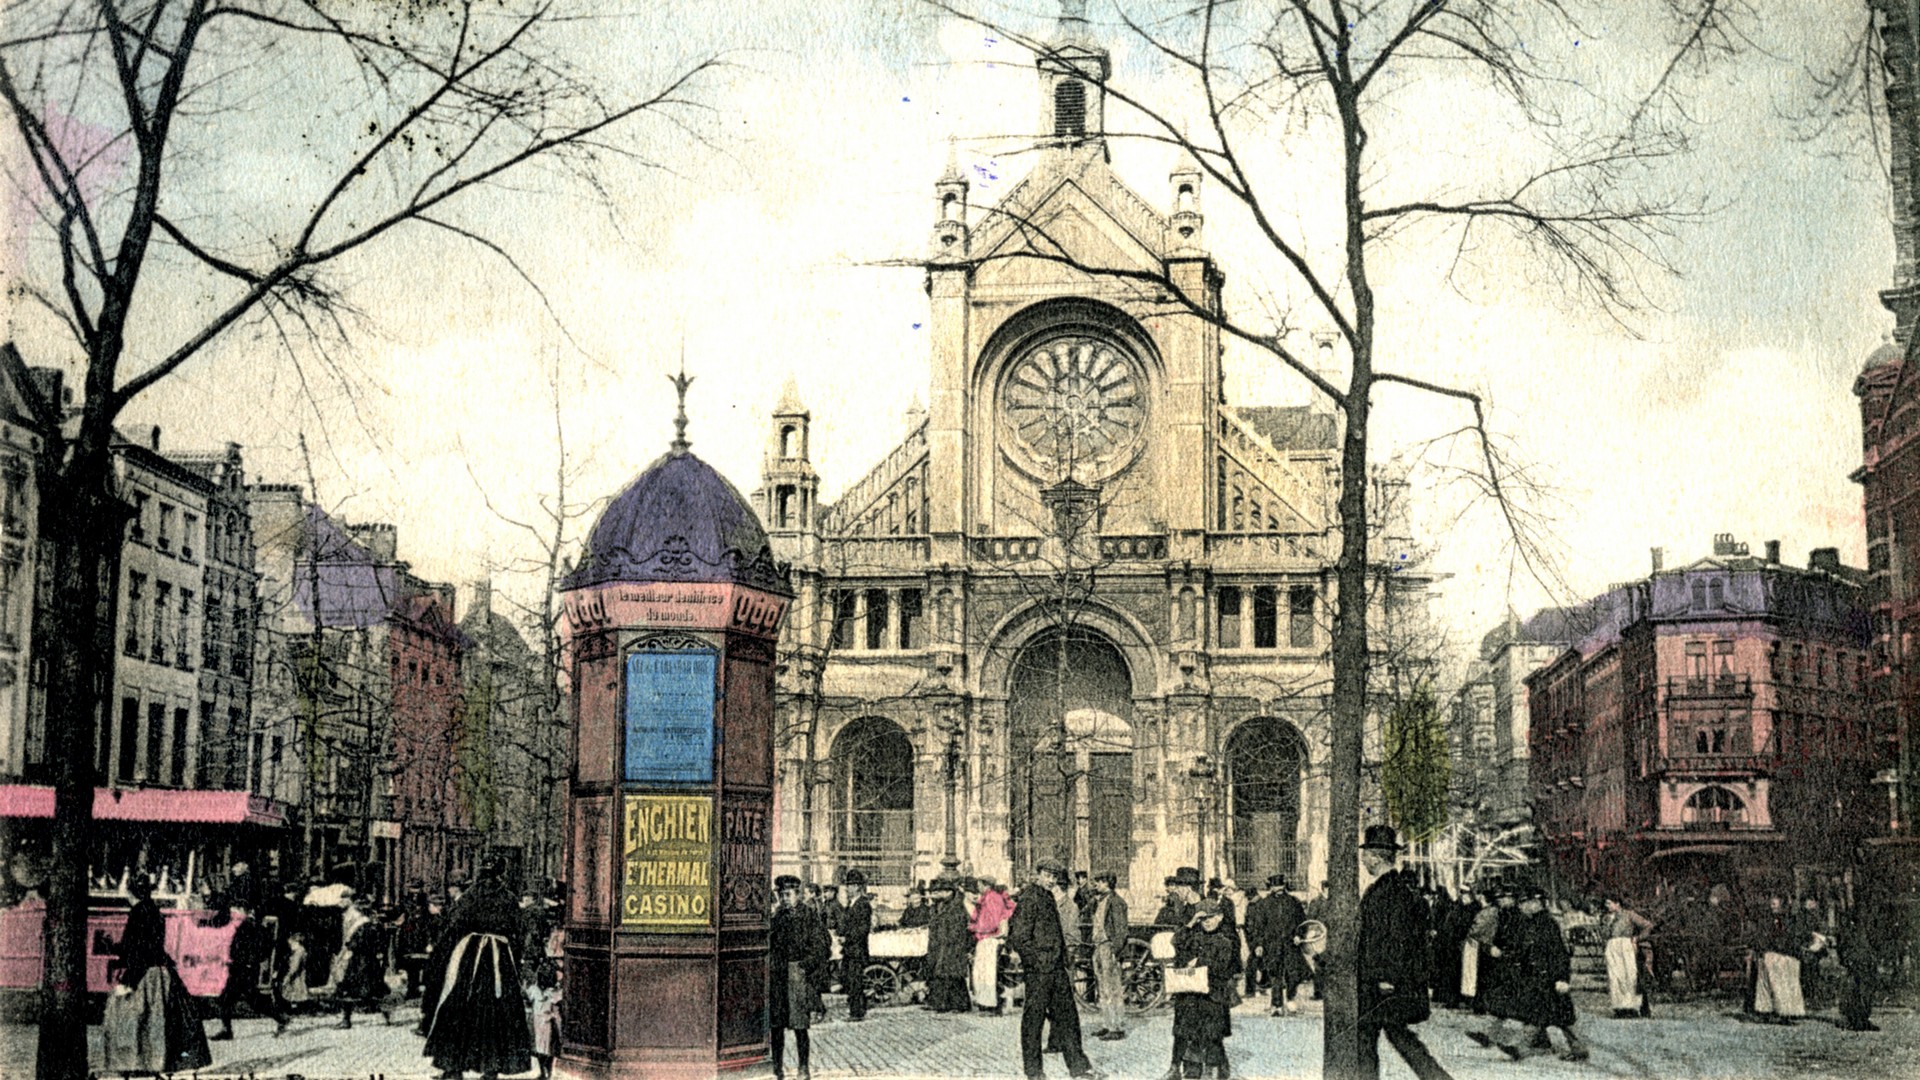 Le marché et l'église Ste Catherine de Bruxelles d'après une carte postale de 1900 (photo domaine public) 